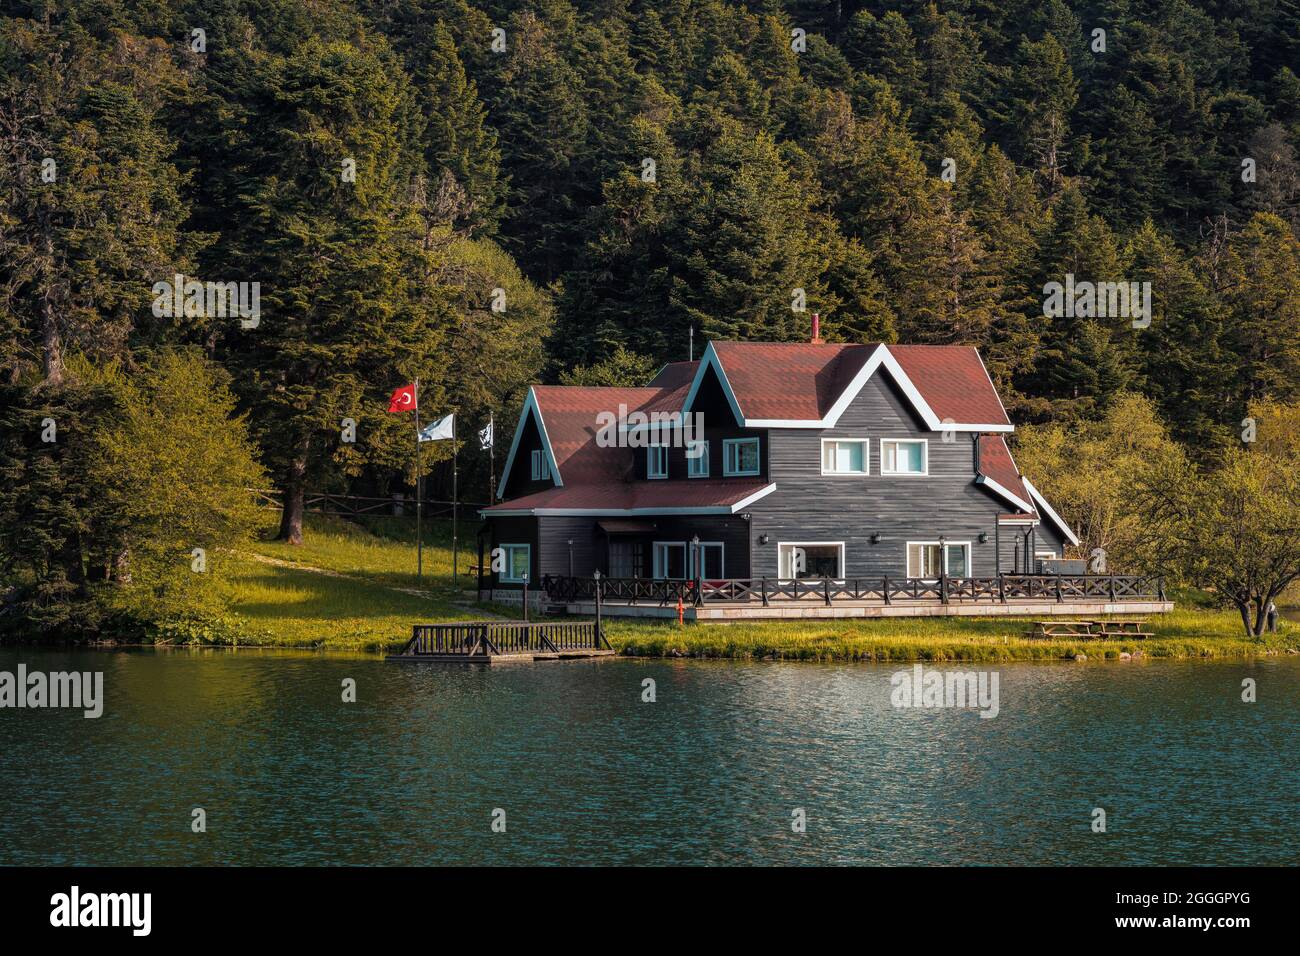 Wunderschöne Landschaft von hölzernen See Haus im Abant Golcuk Nationalpark in Bolu Türkei. Schöner Golcuk Park beliebter touristischer Ort. Stockfoto